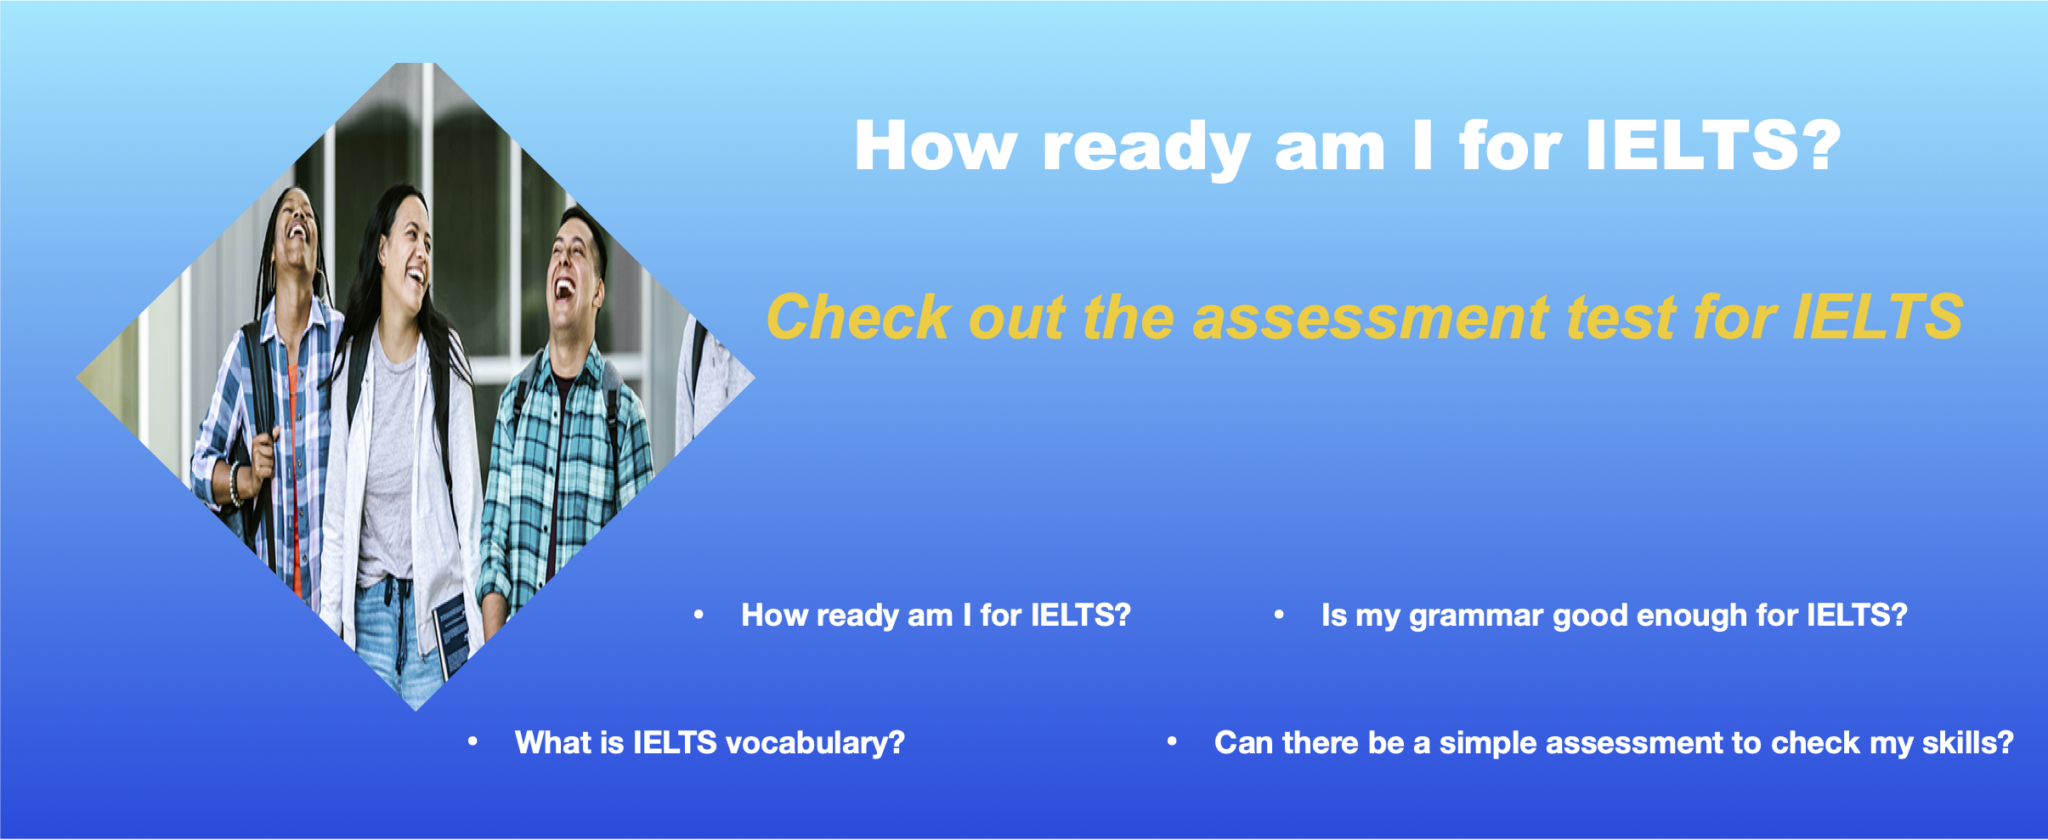 Free IELTS Assessment Banner